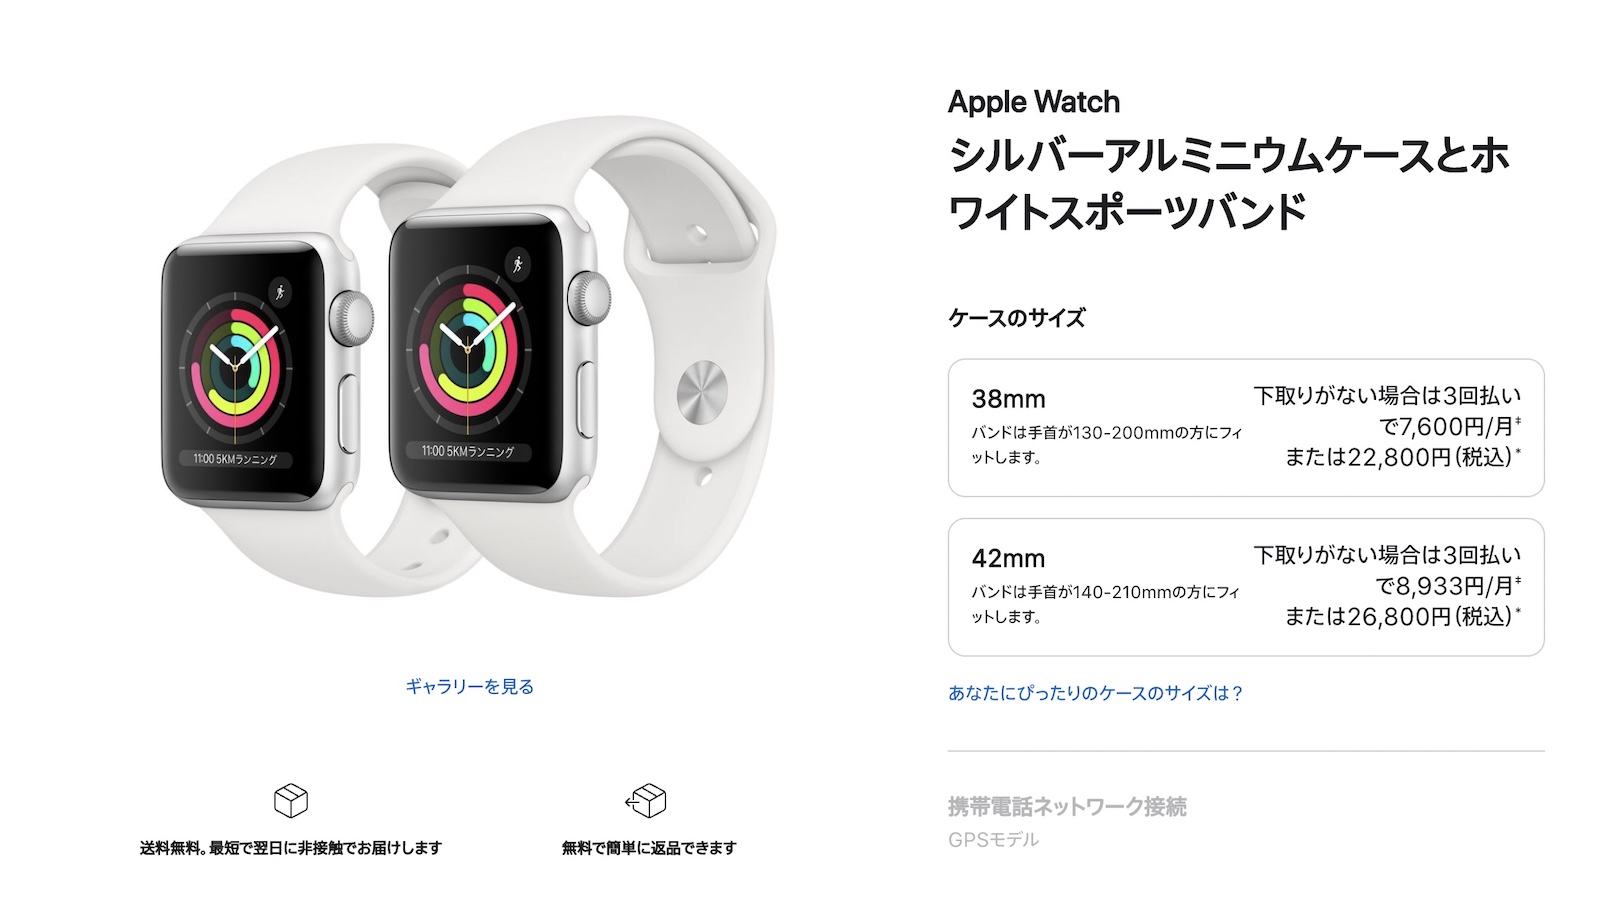 Apple-Watch-Series-3-apple-store.jpg